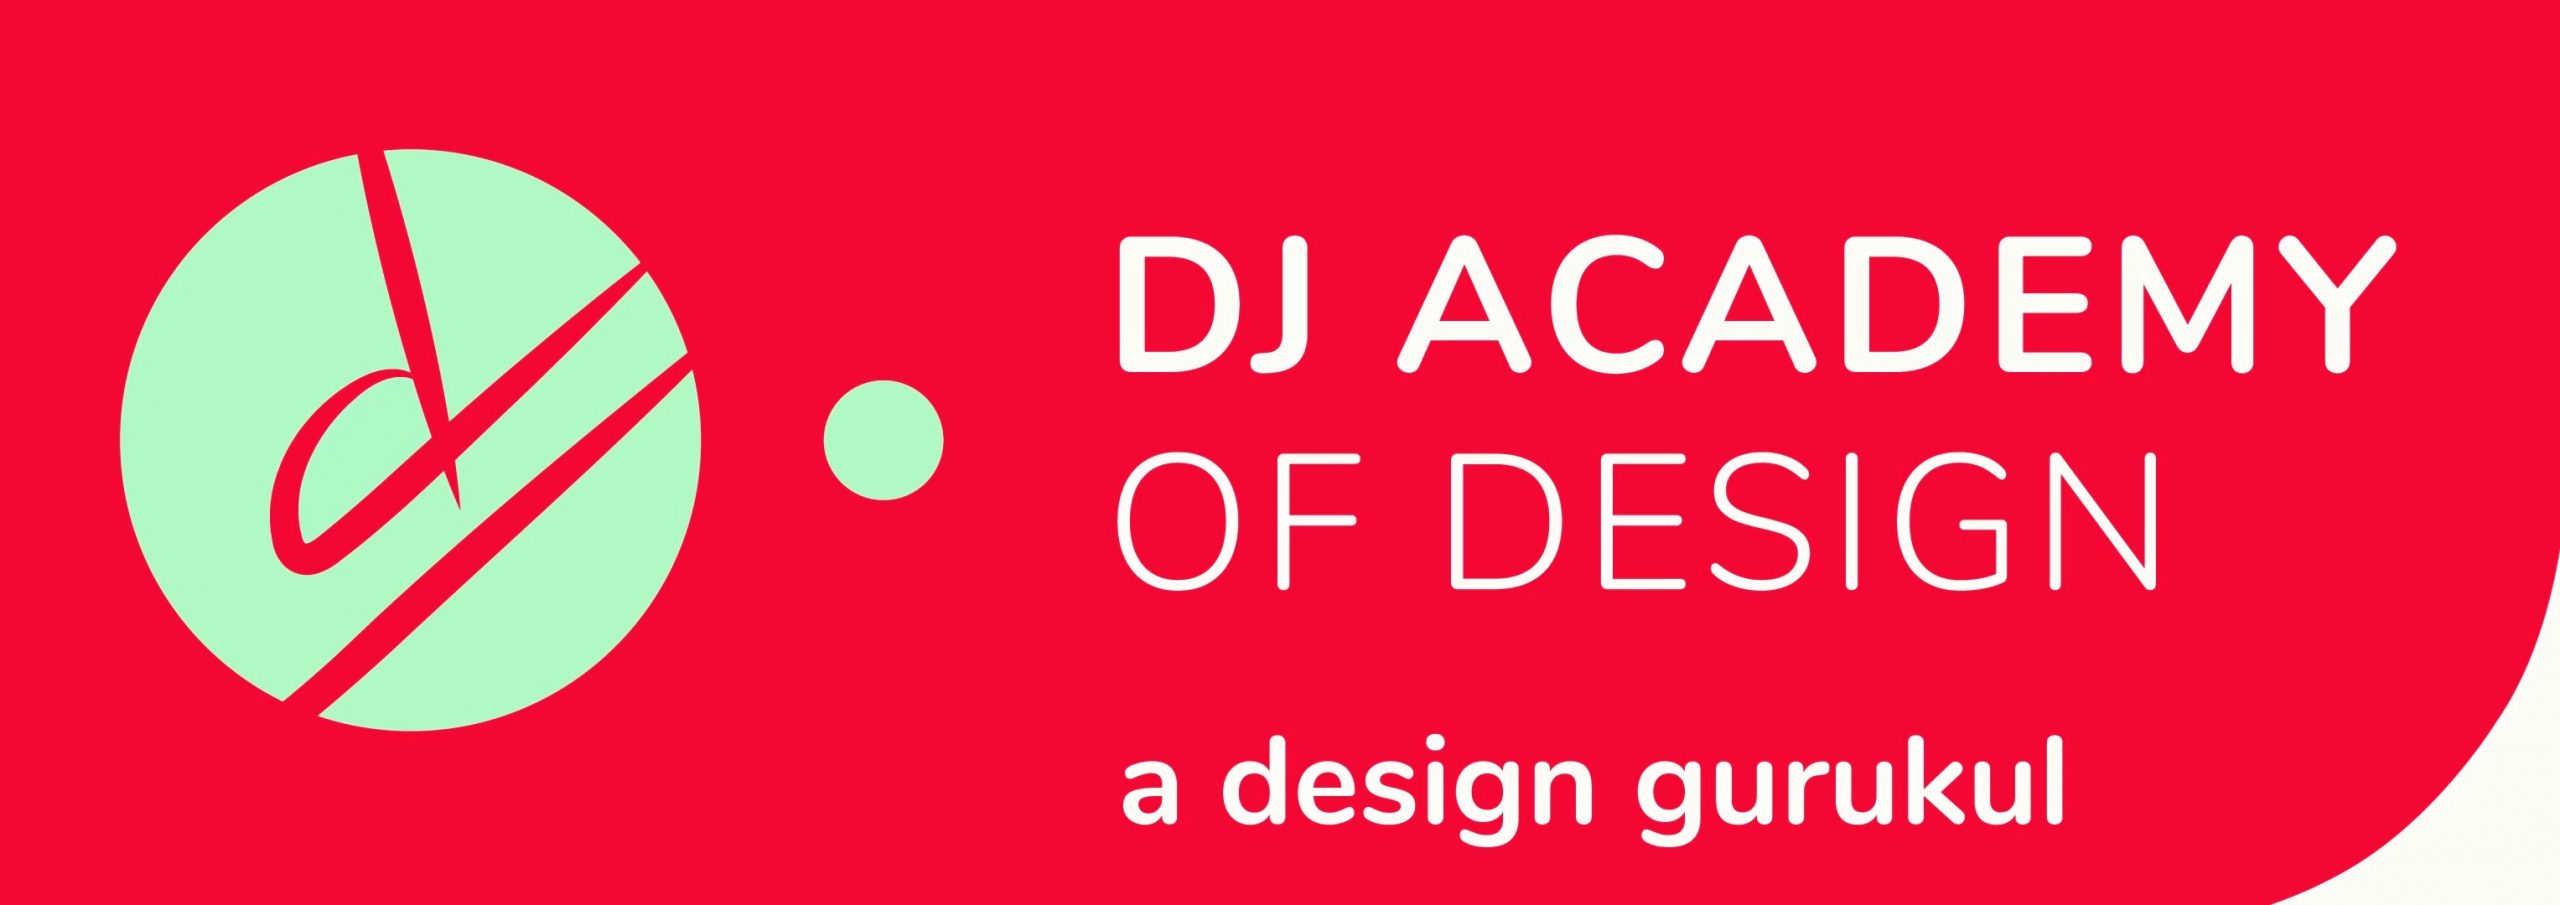 DJ Academy of Design Logo